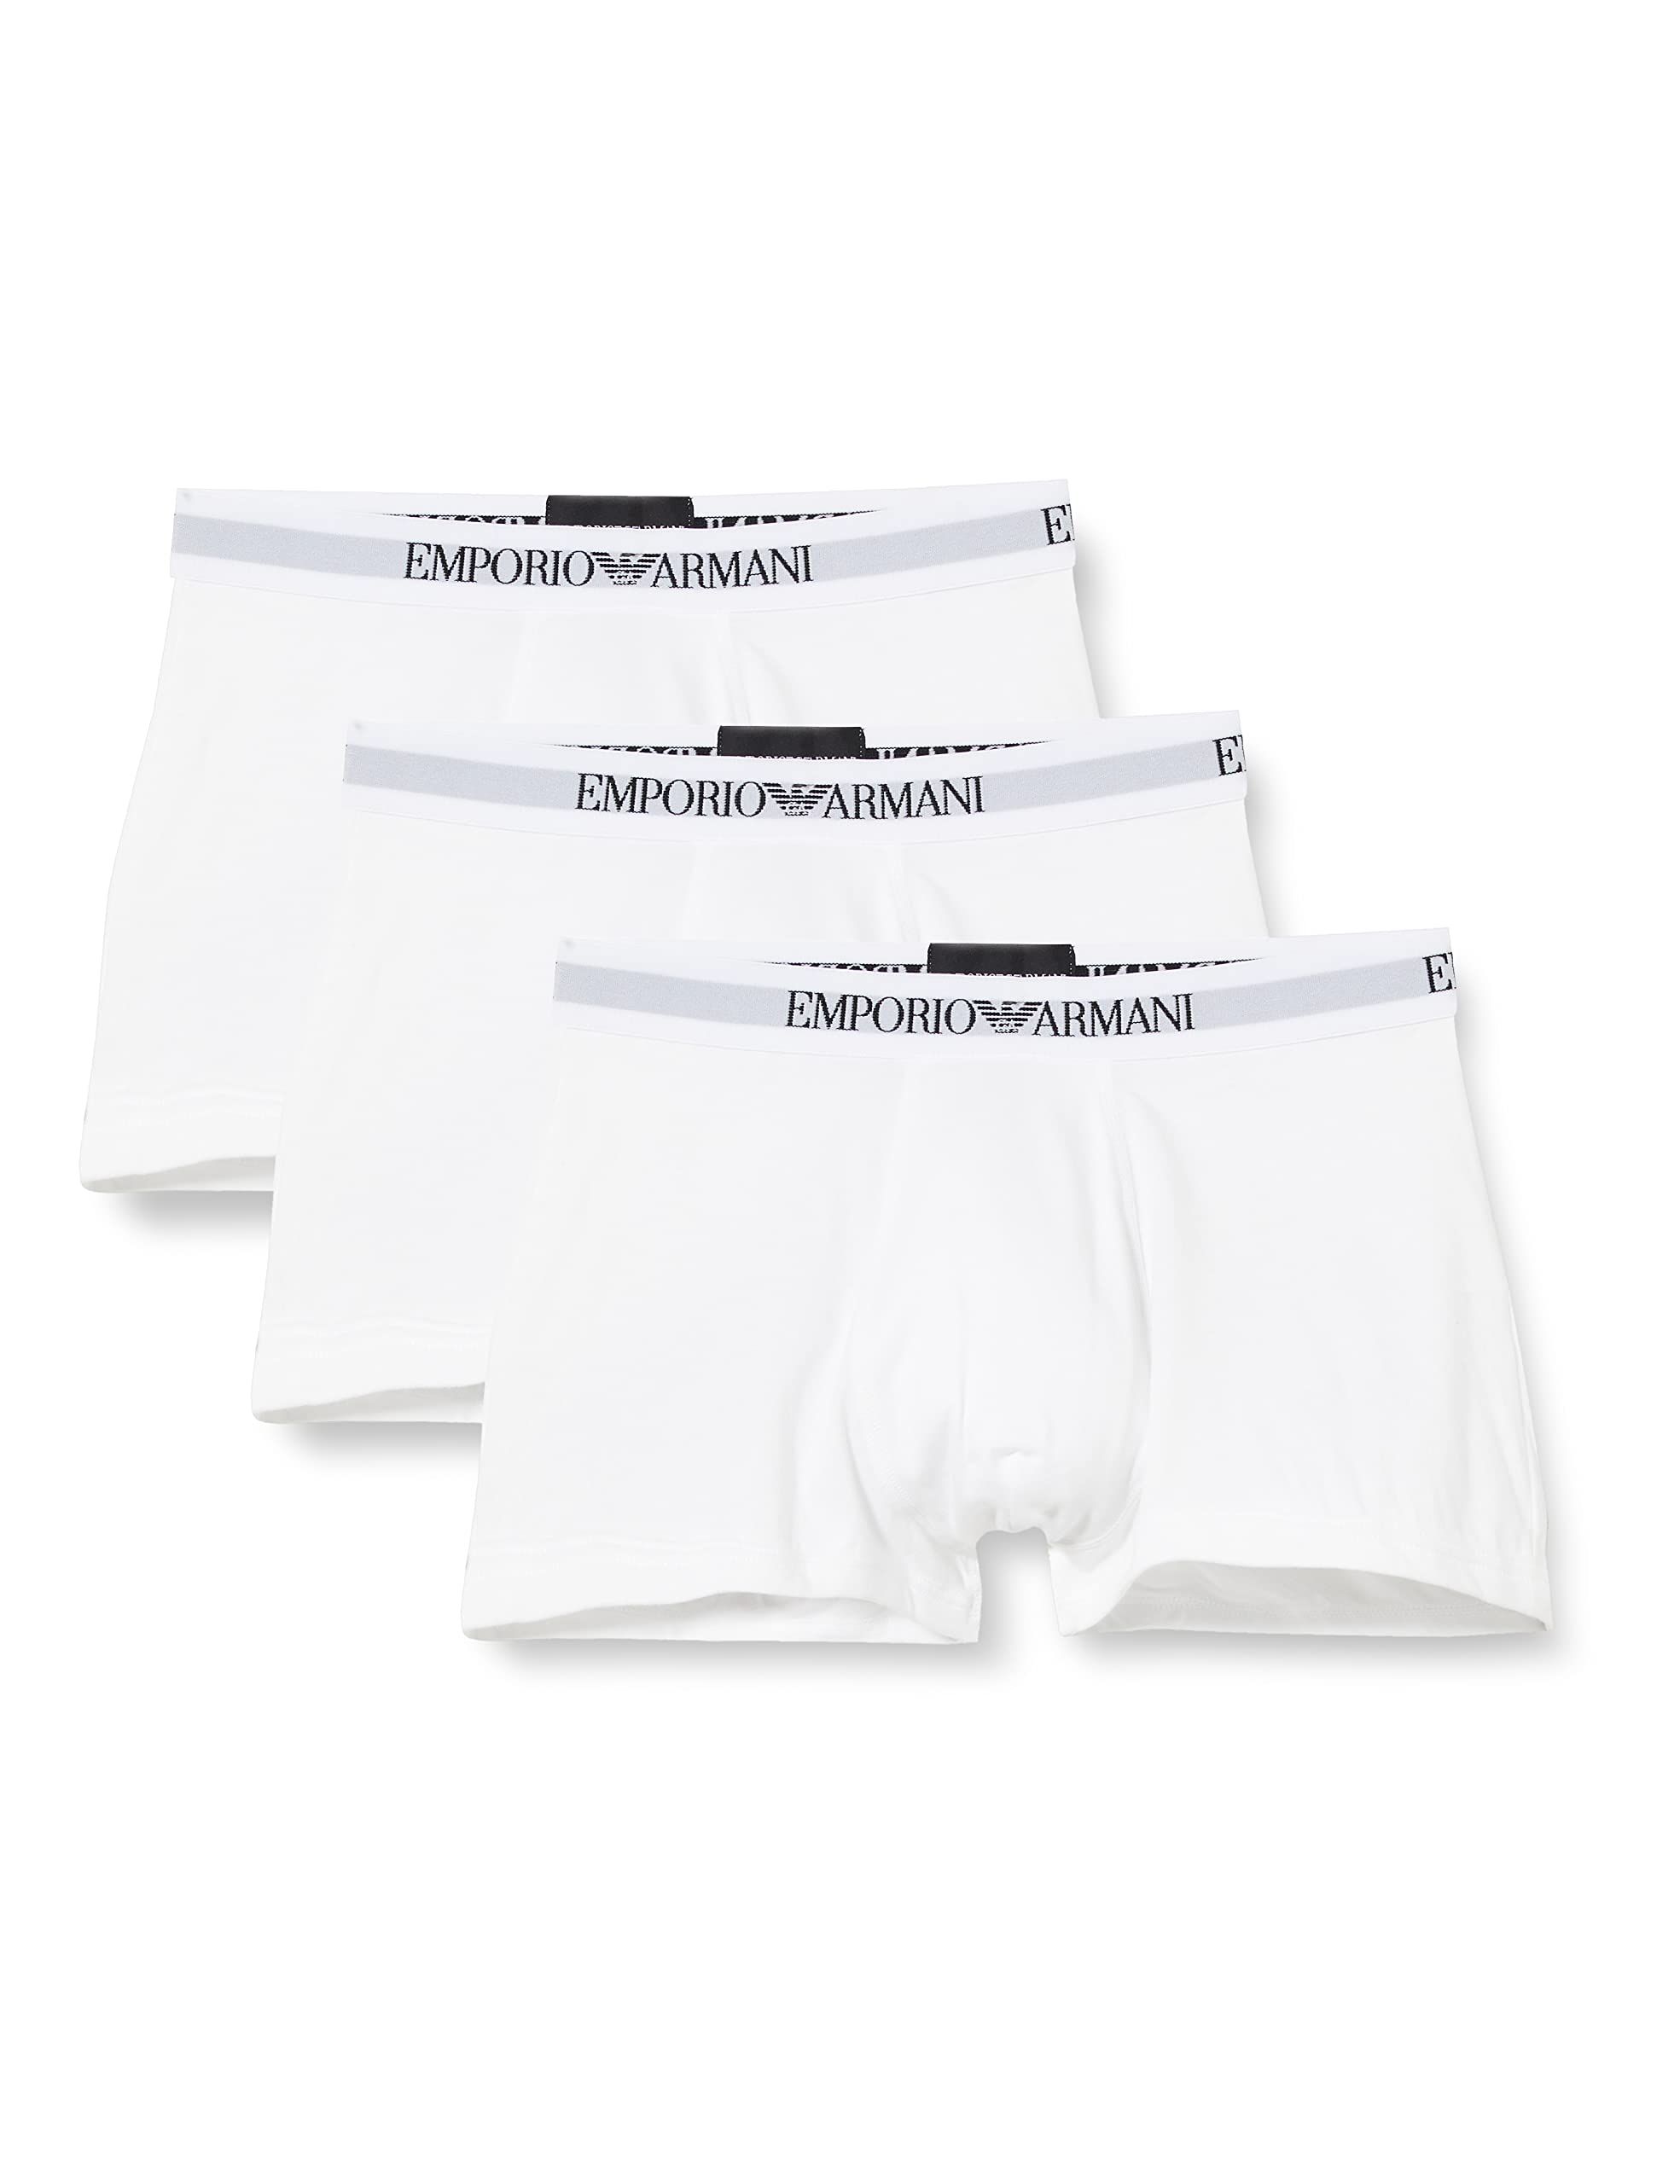 Emporio Armani Herren 111610cc722 underwear, Weiß, M EU